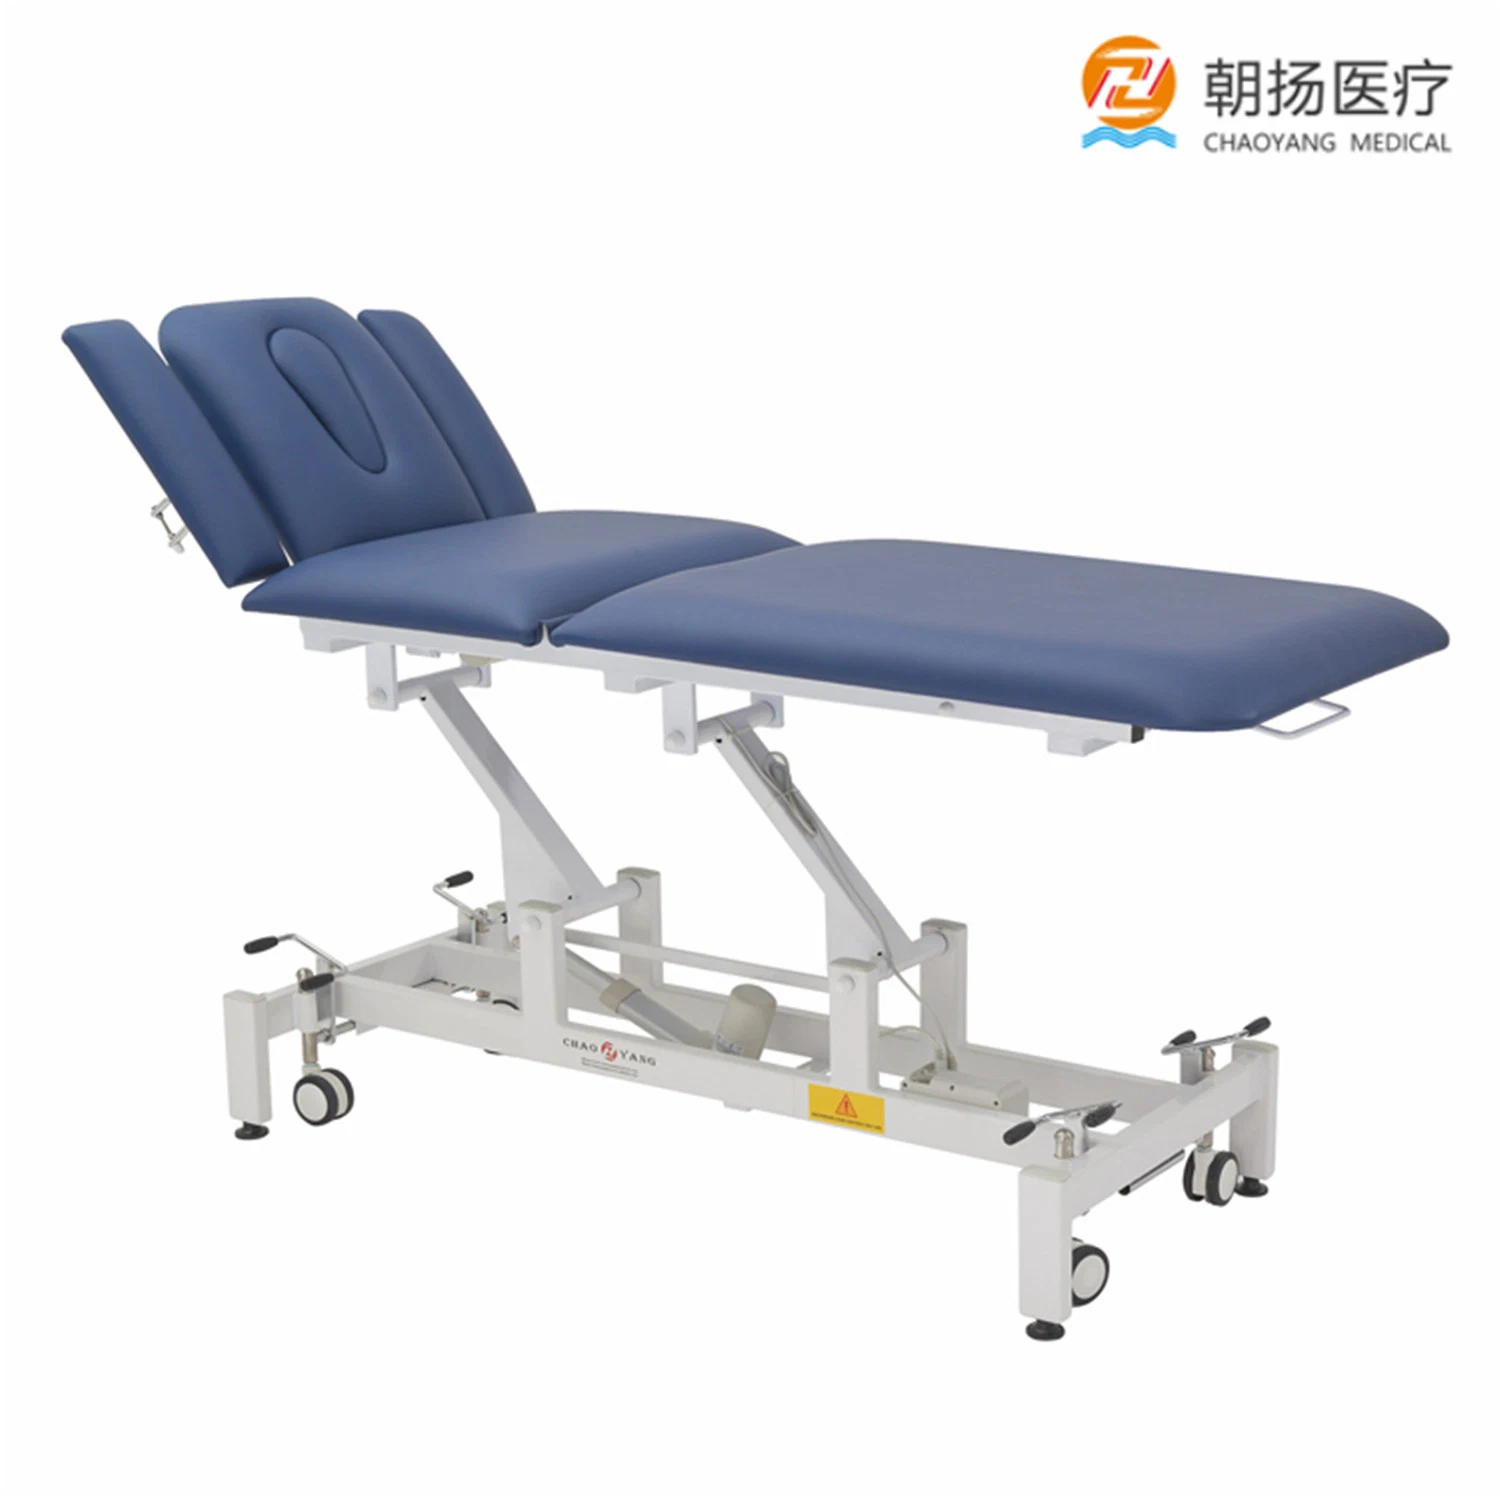 Rehabilitación de hospitales equipos físicos Tabla Bobath cama eléctrica fisioterapia